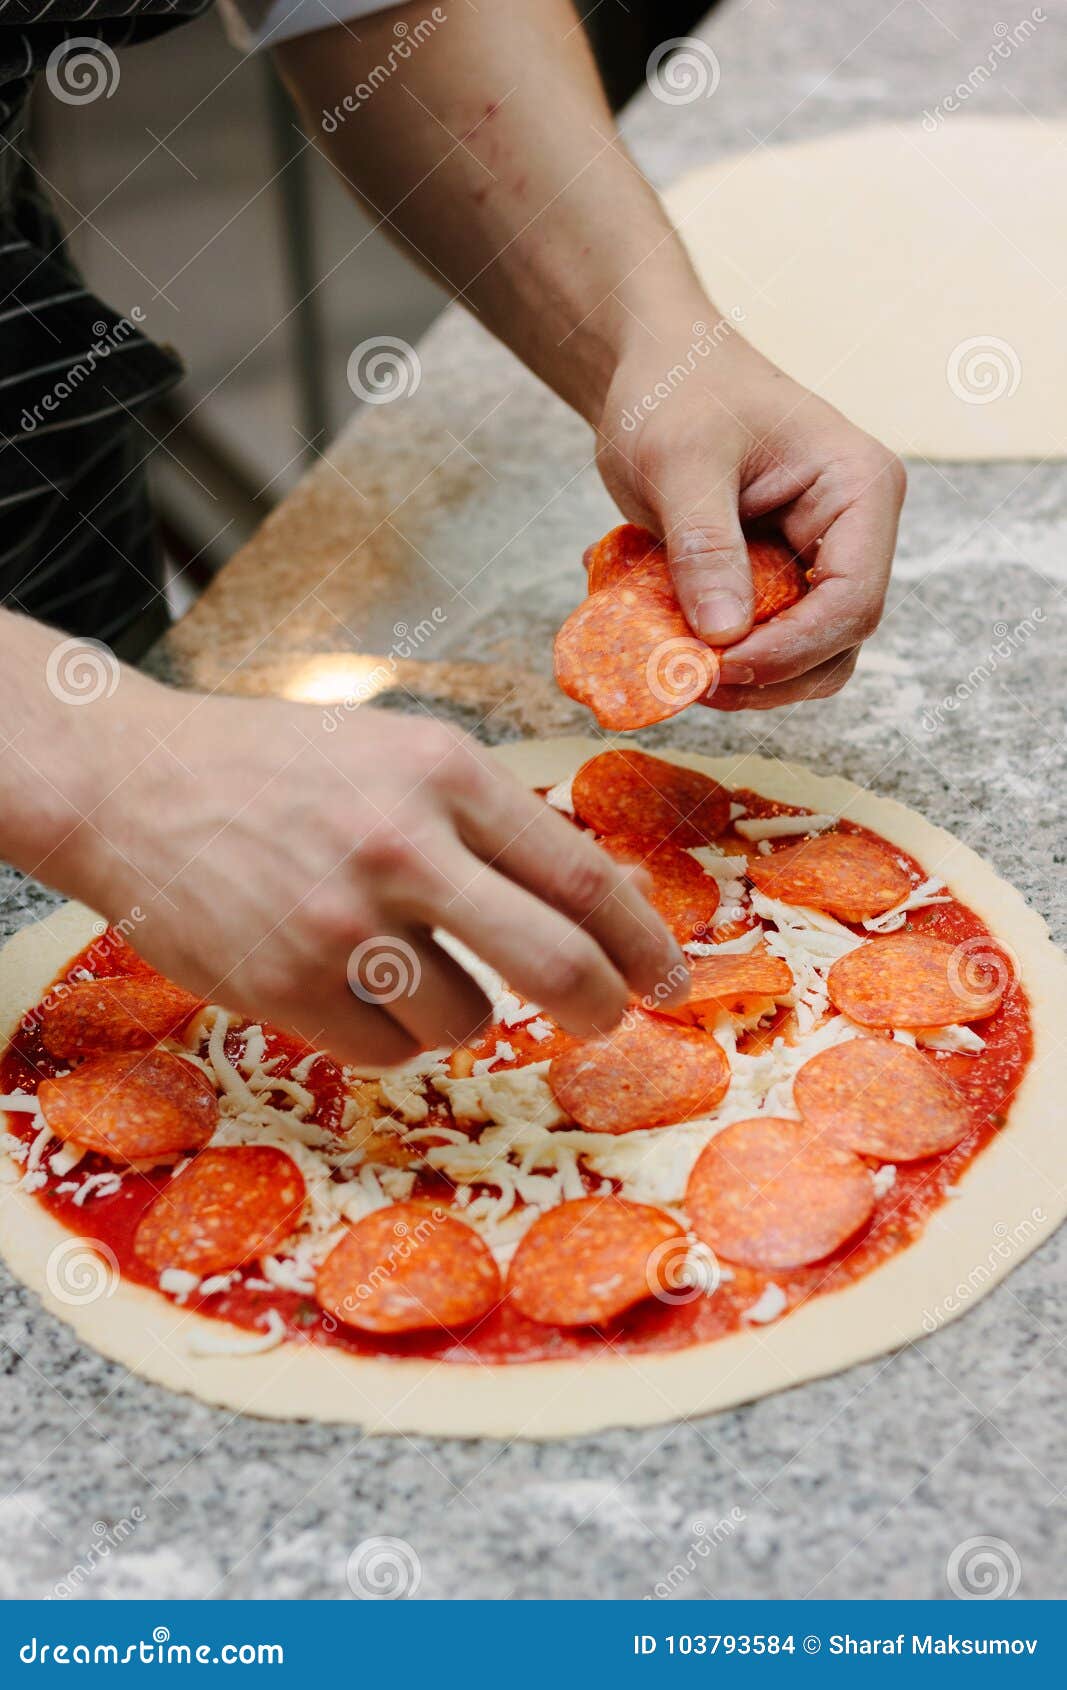 что в пиццу кладут начинка фото 110